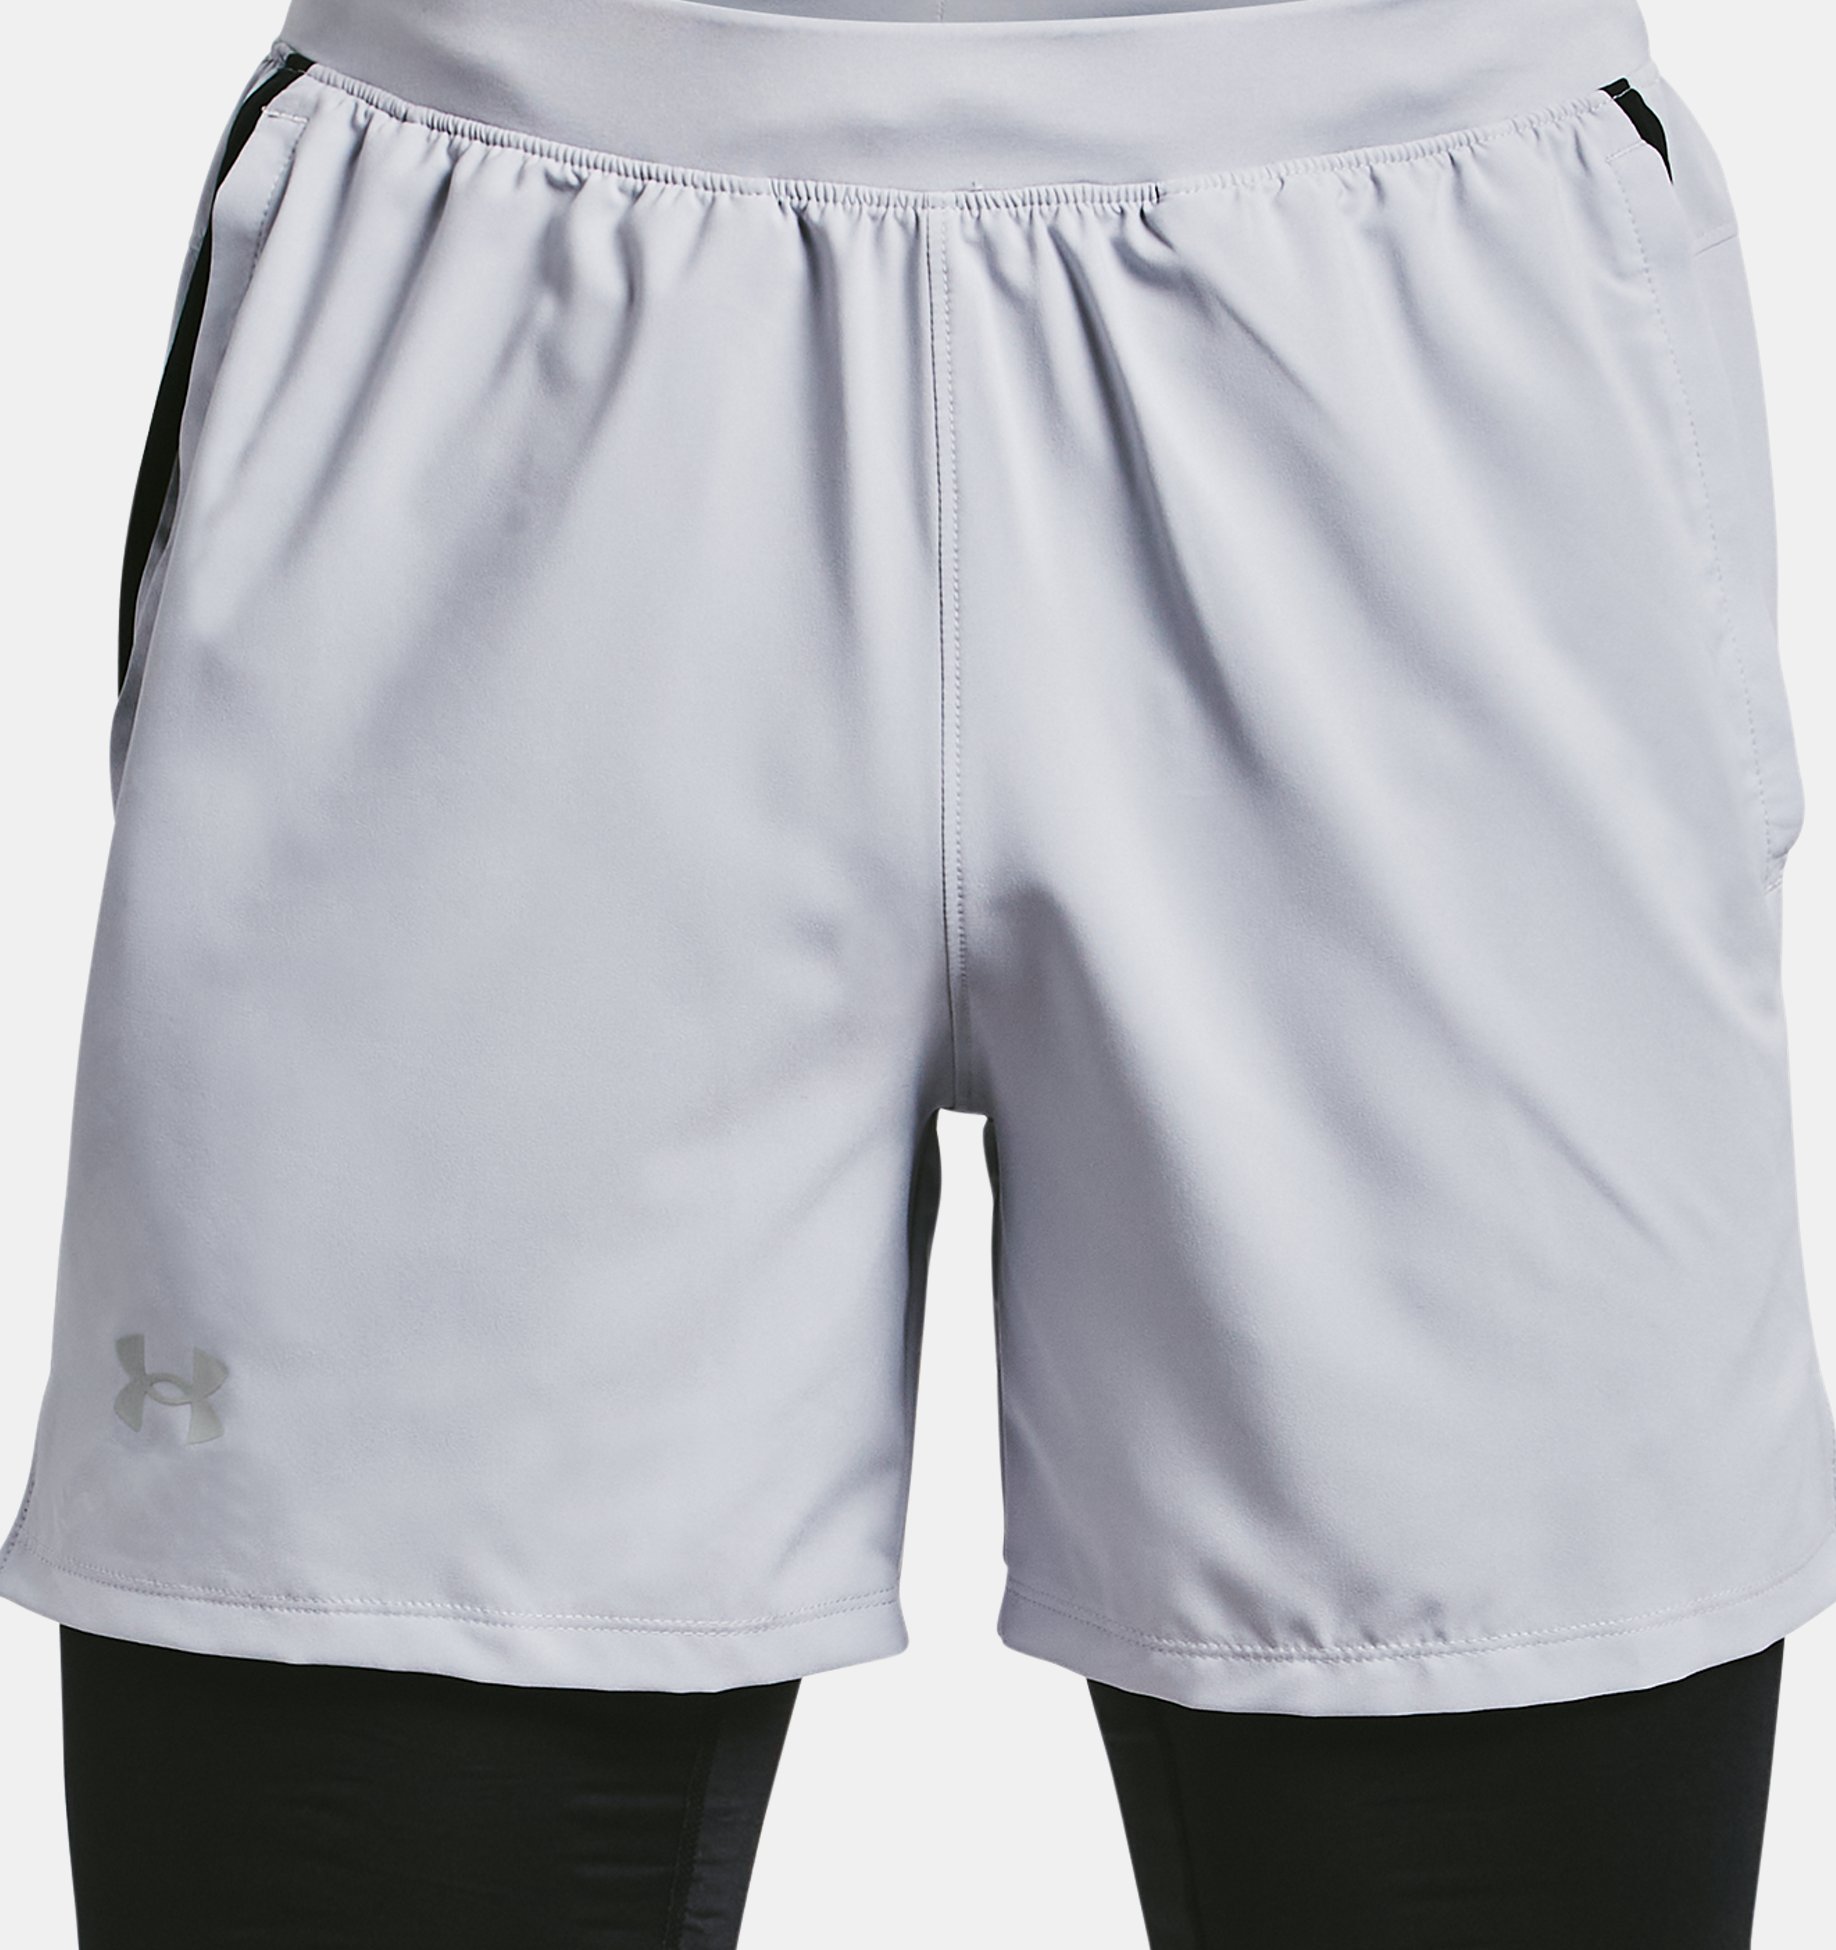 UNDERCO Commando Sport Short Pants For Men in Penang